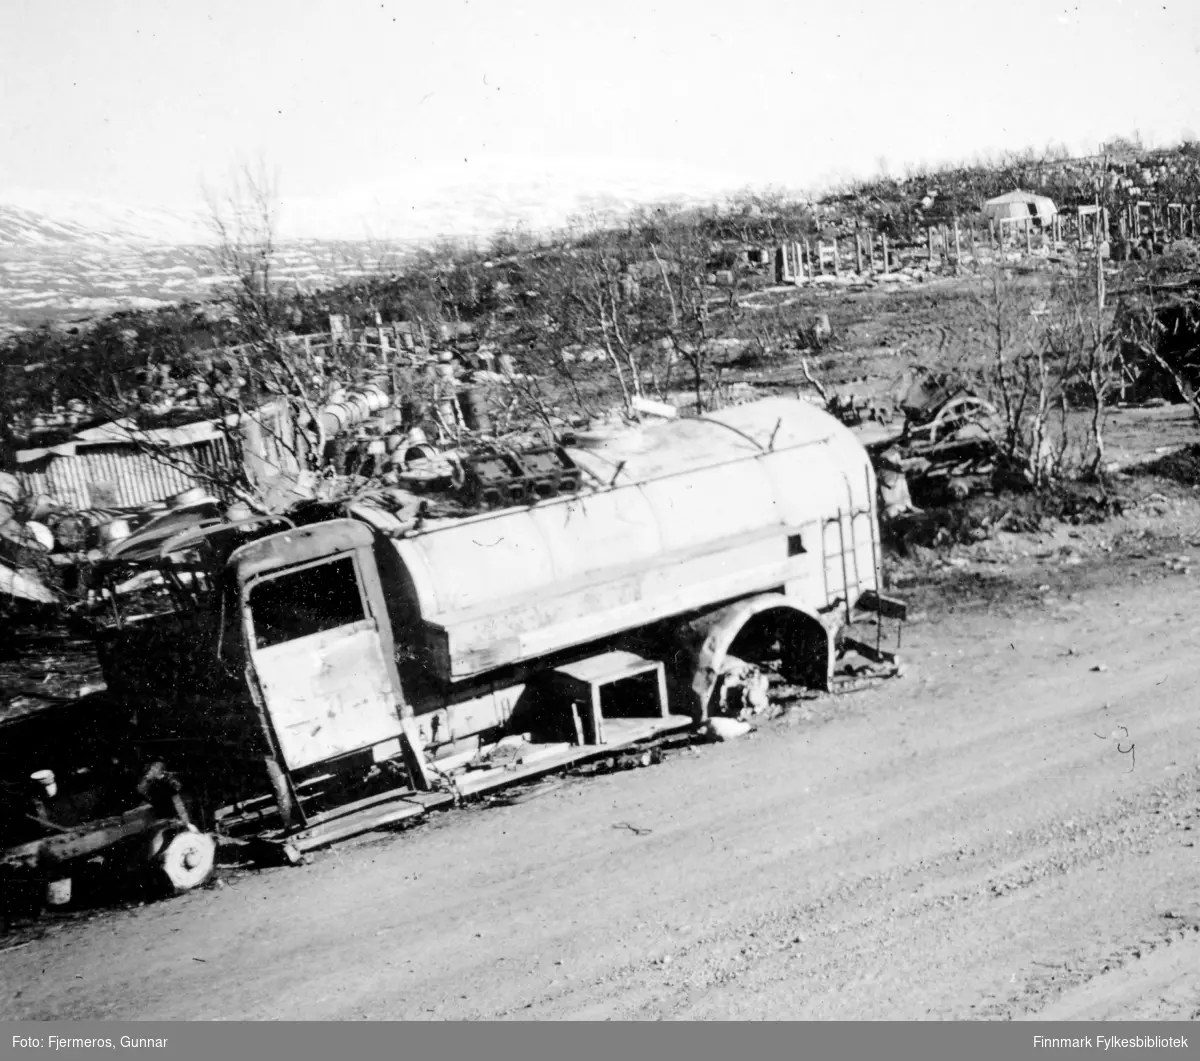 Bilde fra Lapplandsarmeens retrettvei. Vraket av en lastebil står i veikanten og ruiner av flere bygninger ses i bakgrunnen. Nøyaktig sted er ukjent.